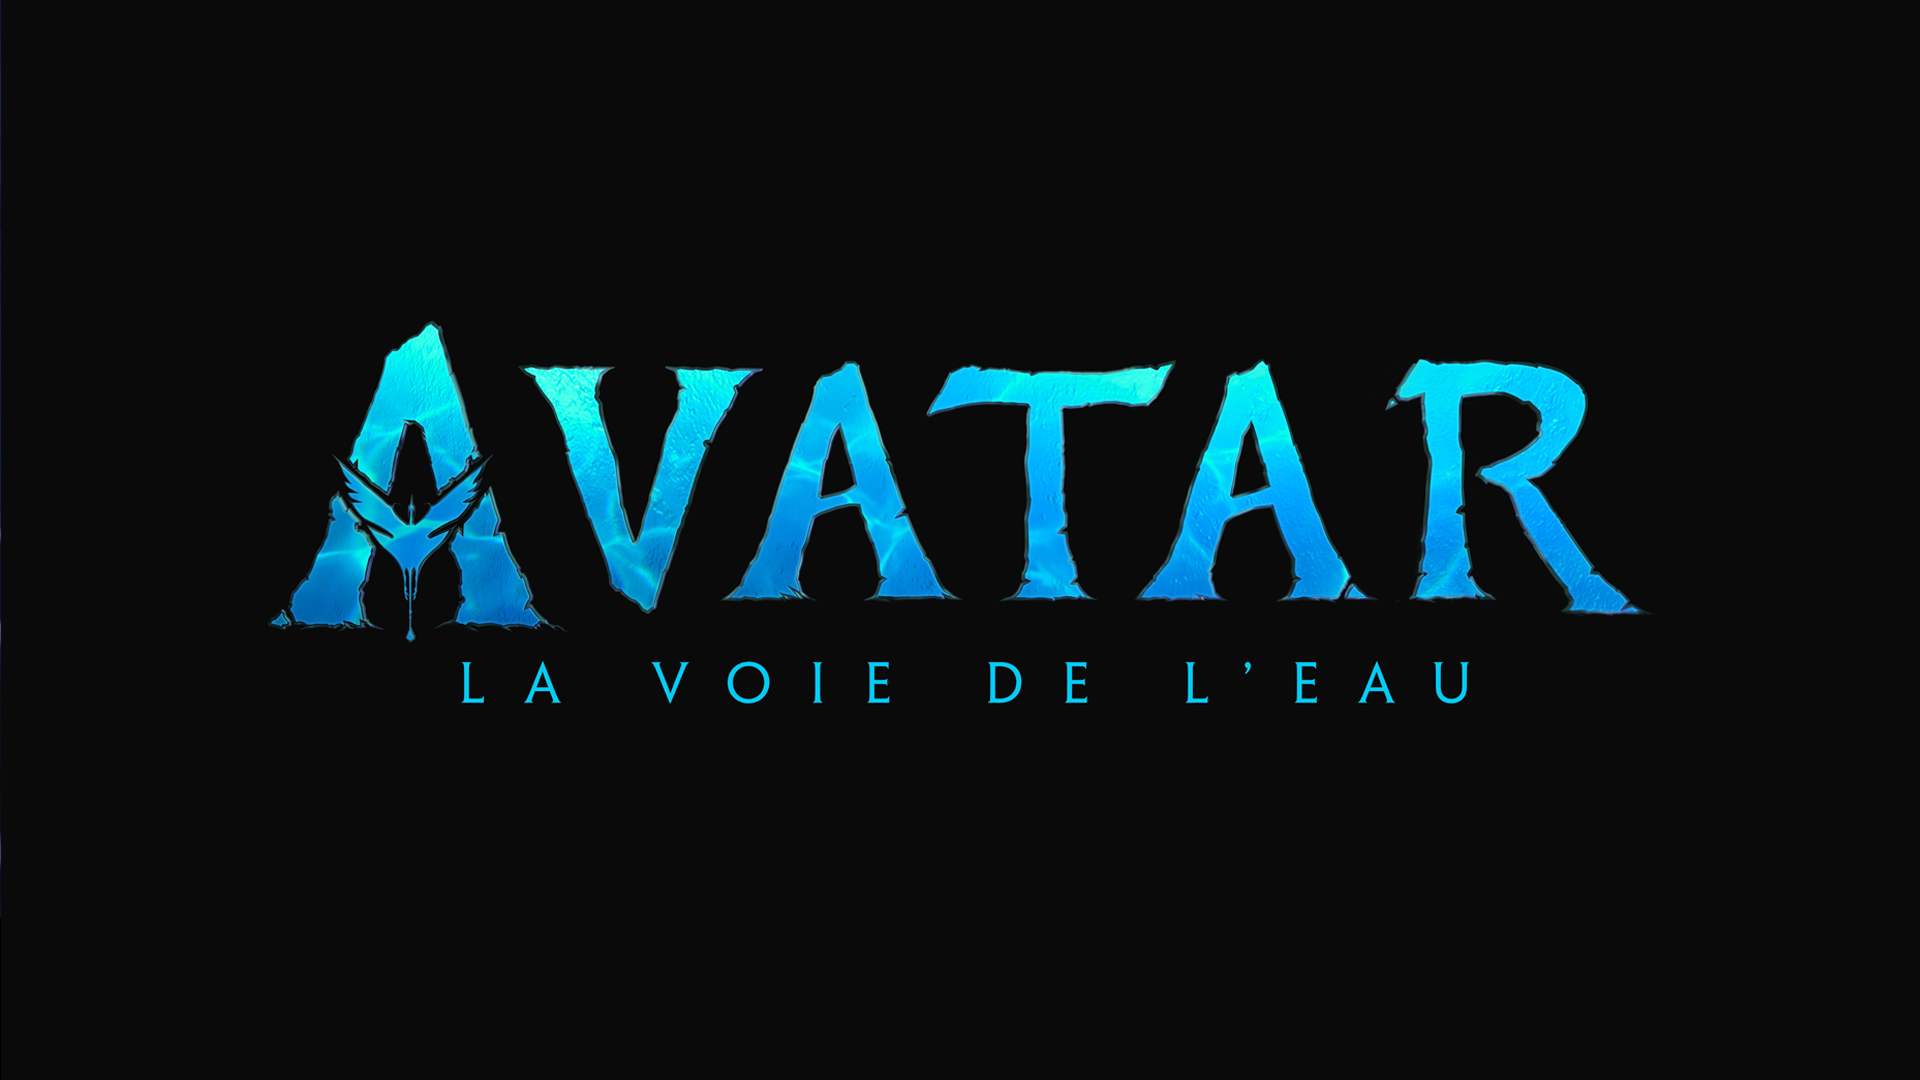 Avatar - 3D (V.F.)  Bande-annonce et horaires du film